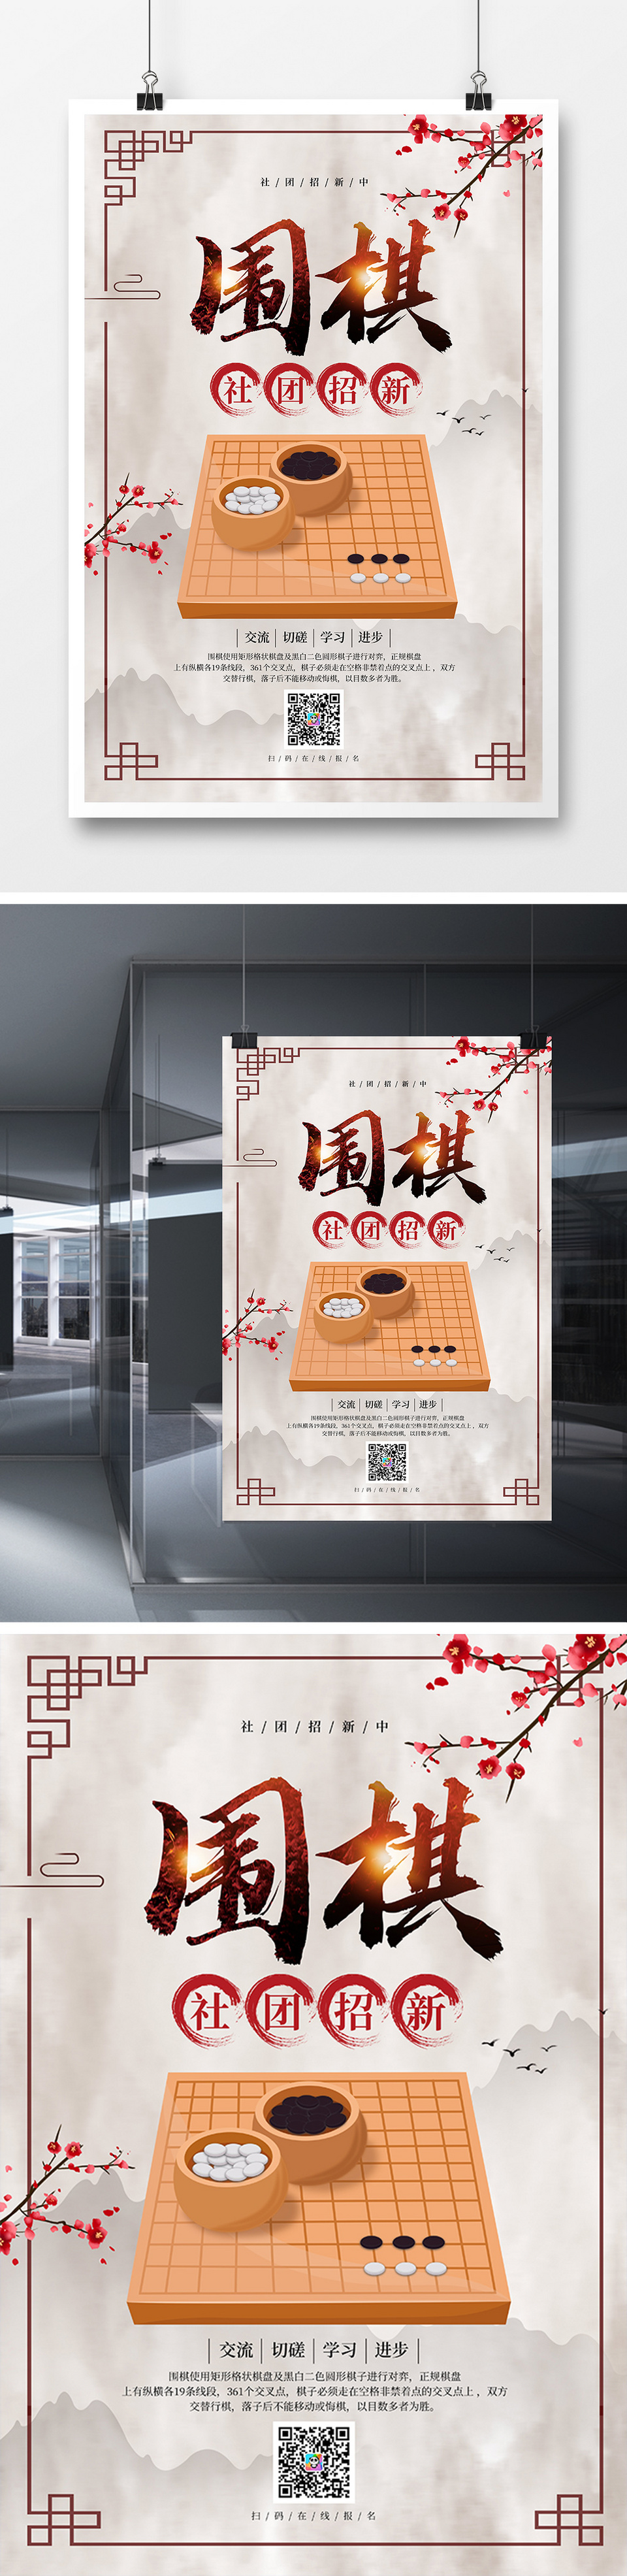 中国风围棋社团招新宣传海报